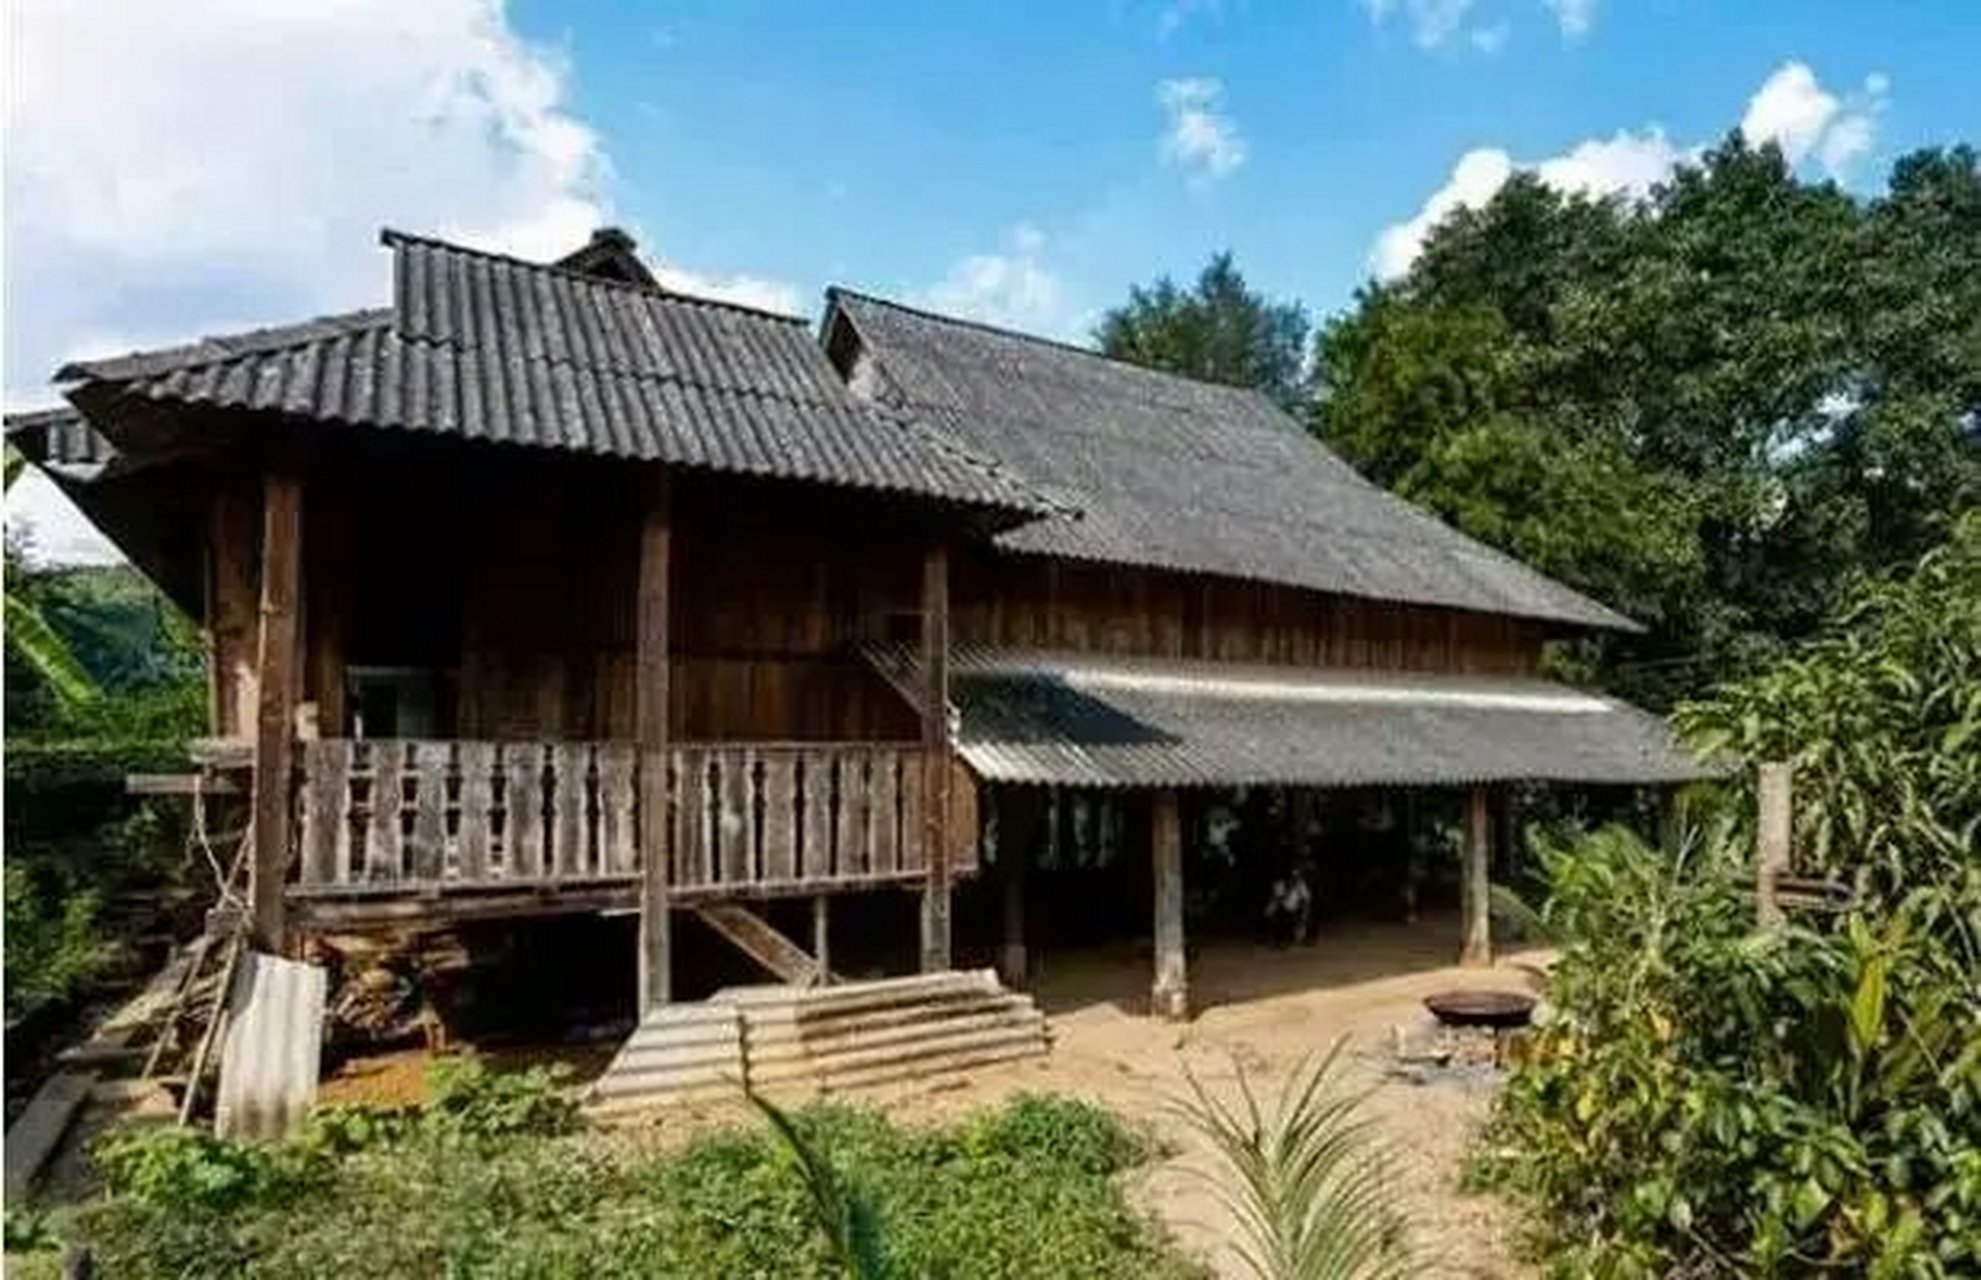 可以去傣家竹楼,在橄榄坝,勐仑,基诺山寨都有迷人的傣族风情.